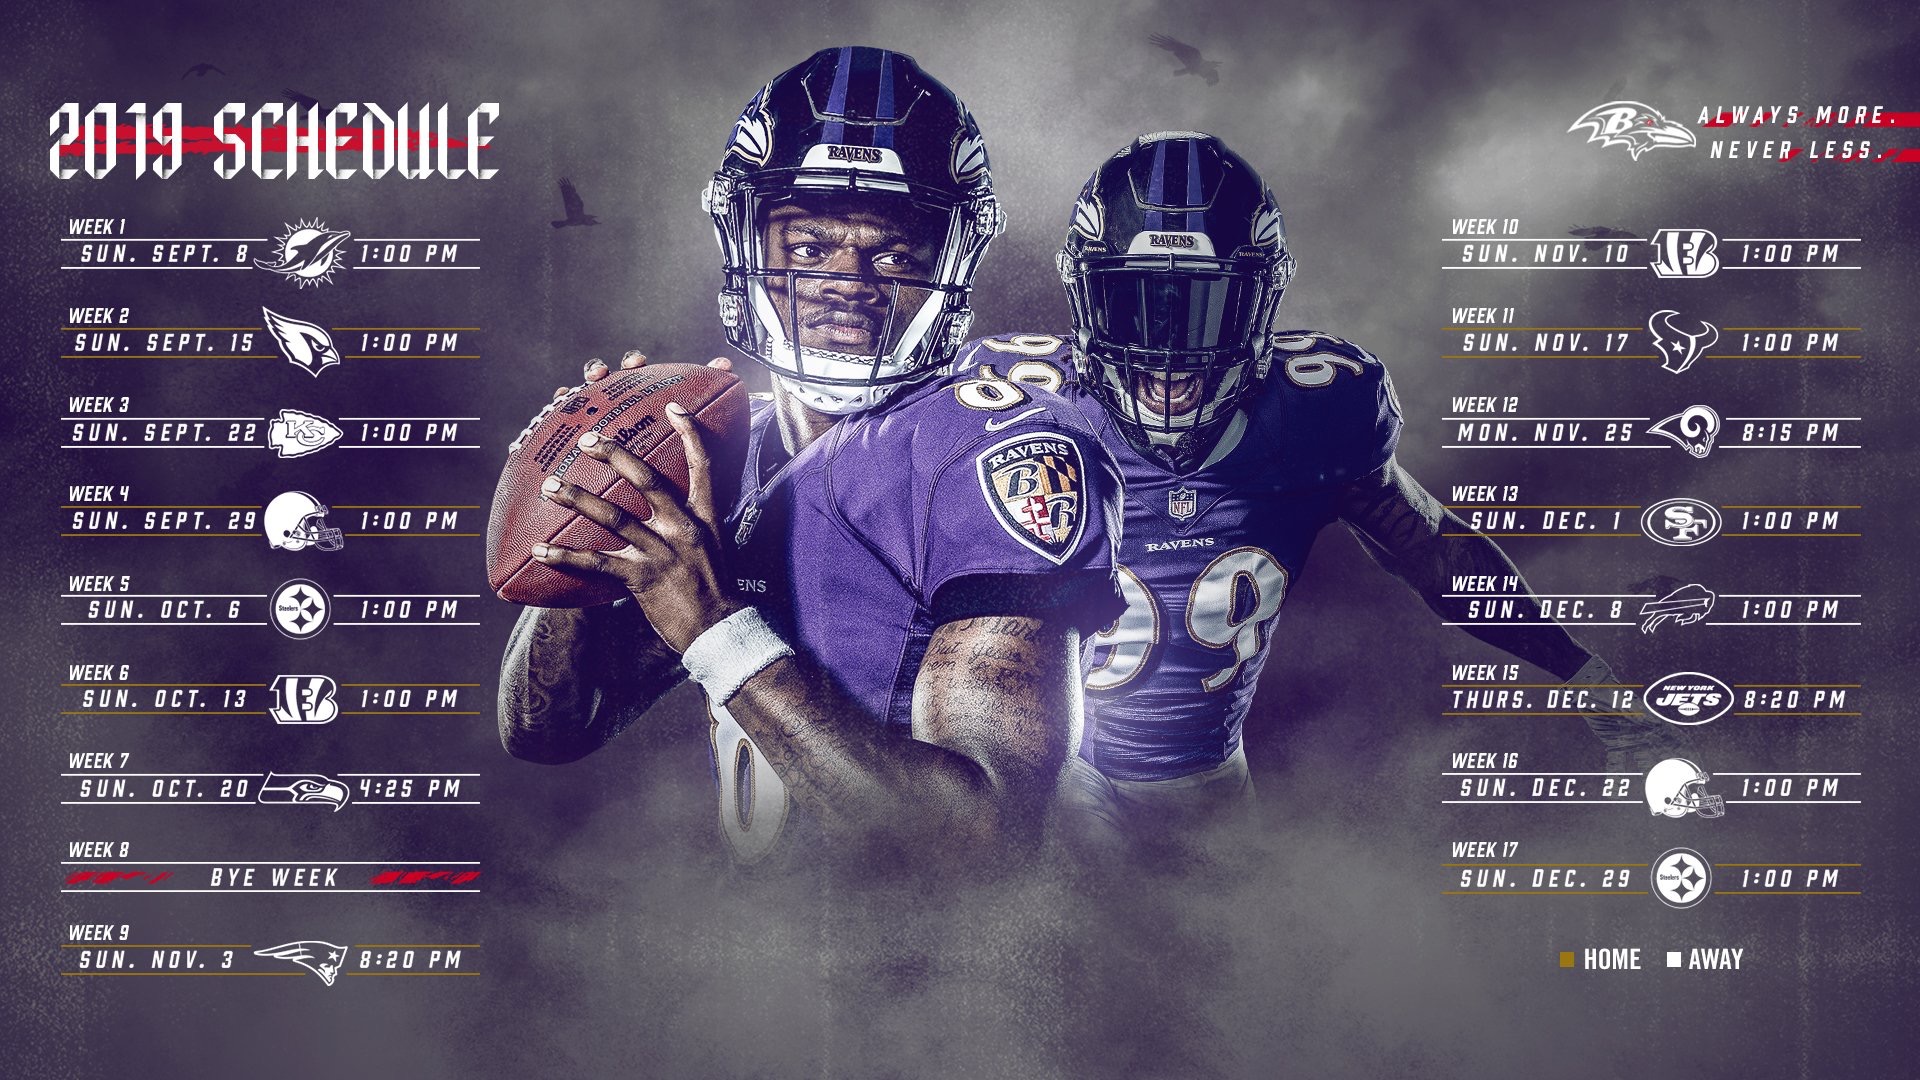 2019-2020 Baltimore Ravens NFL regular season schedule